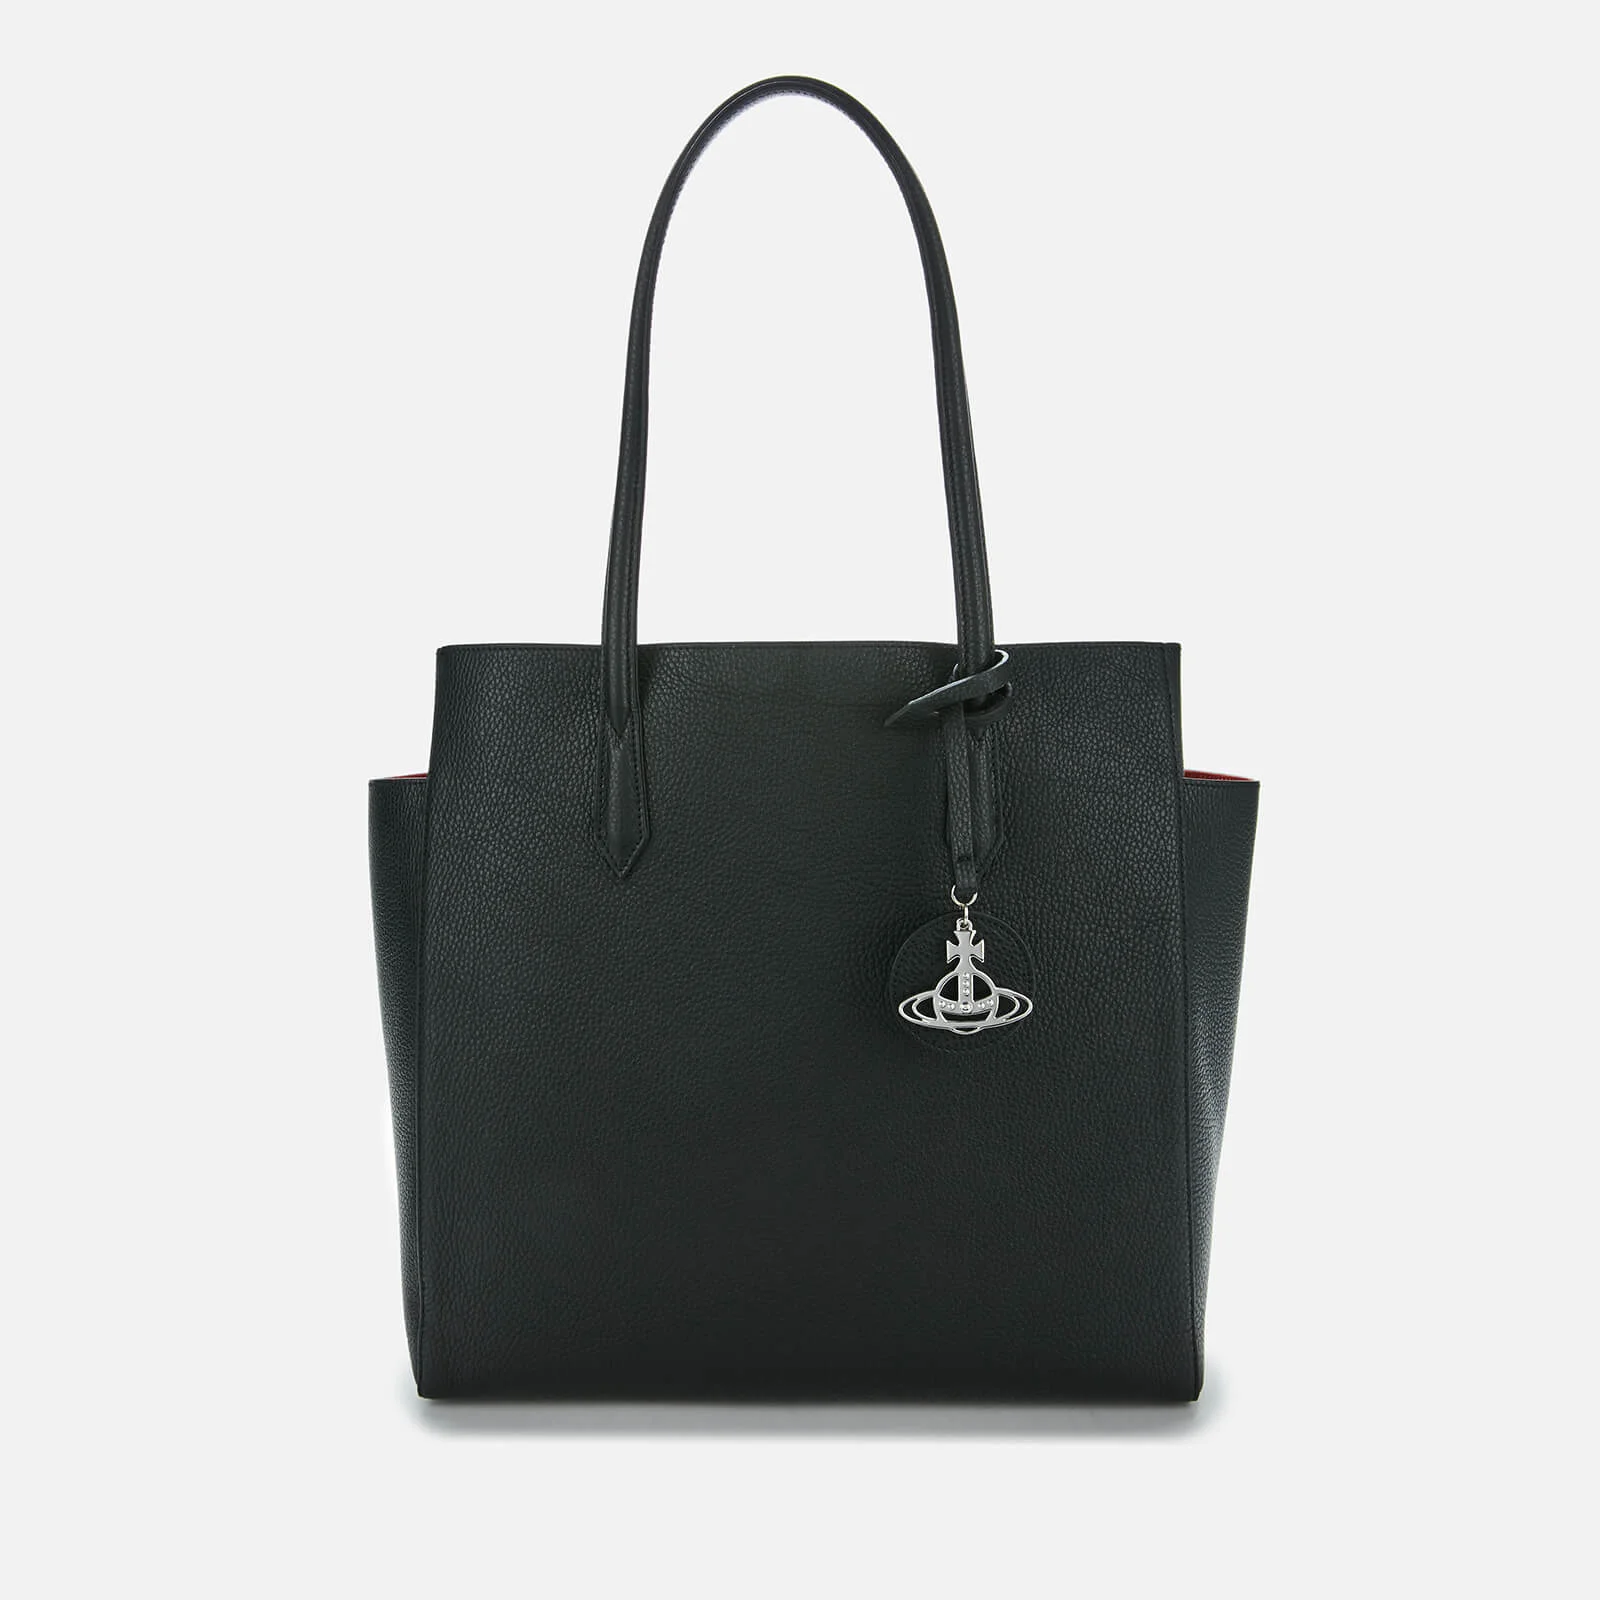 Vivienne Westwood Women's Rachel Large Shopper Bag - Black Image 1